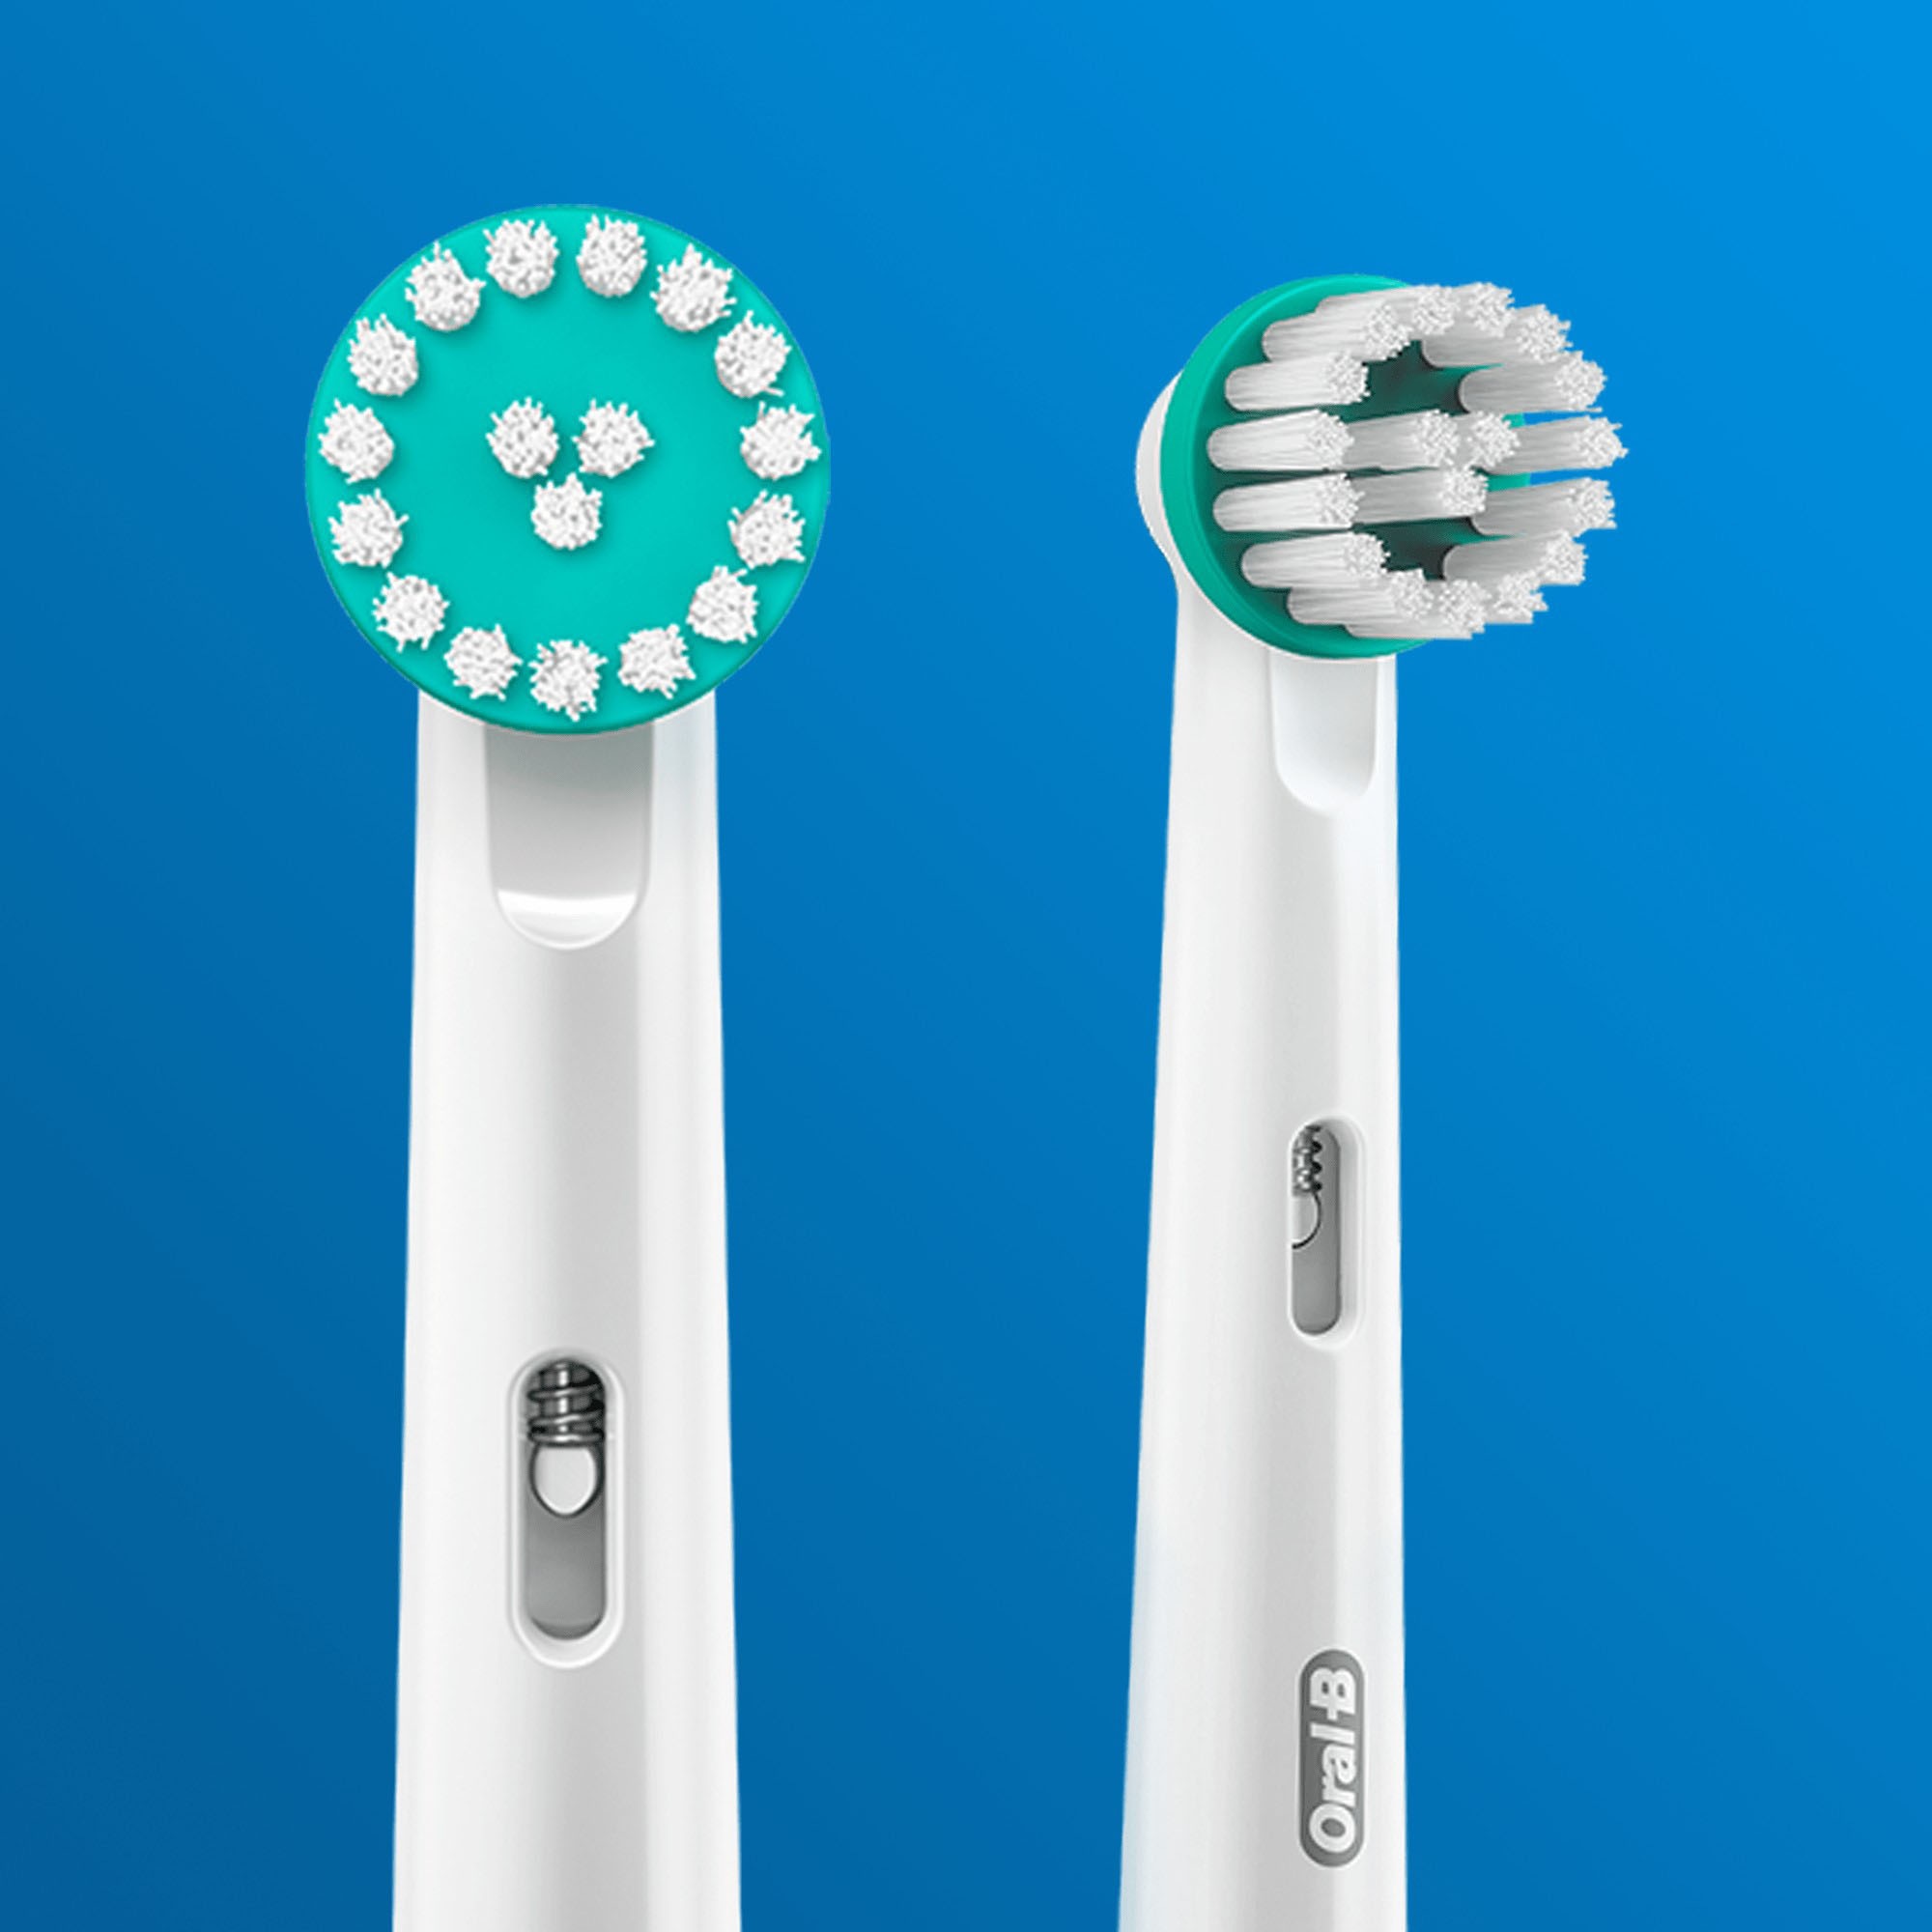 Oral-B Elektrische Zahnbürste »Teen White«, 2 St. Aufsteckbürsten, mit visueller Andruckkontrolle